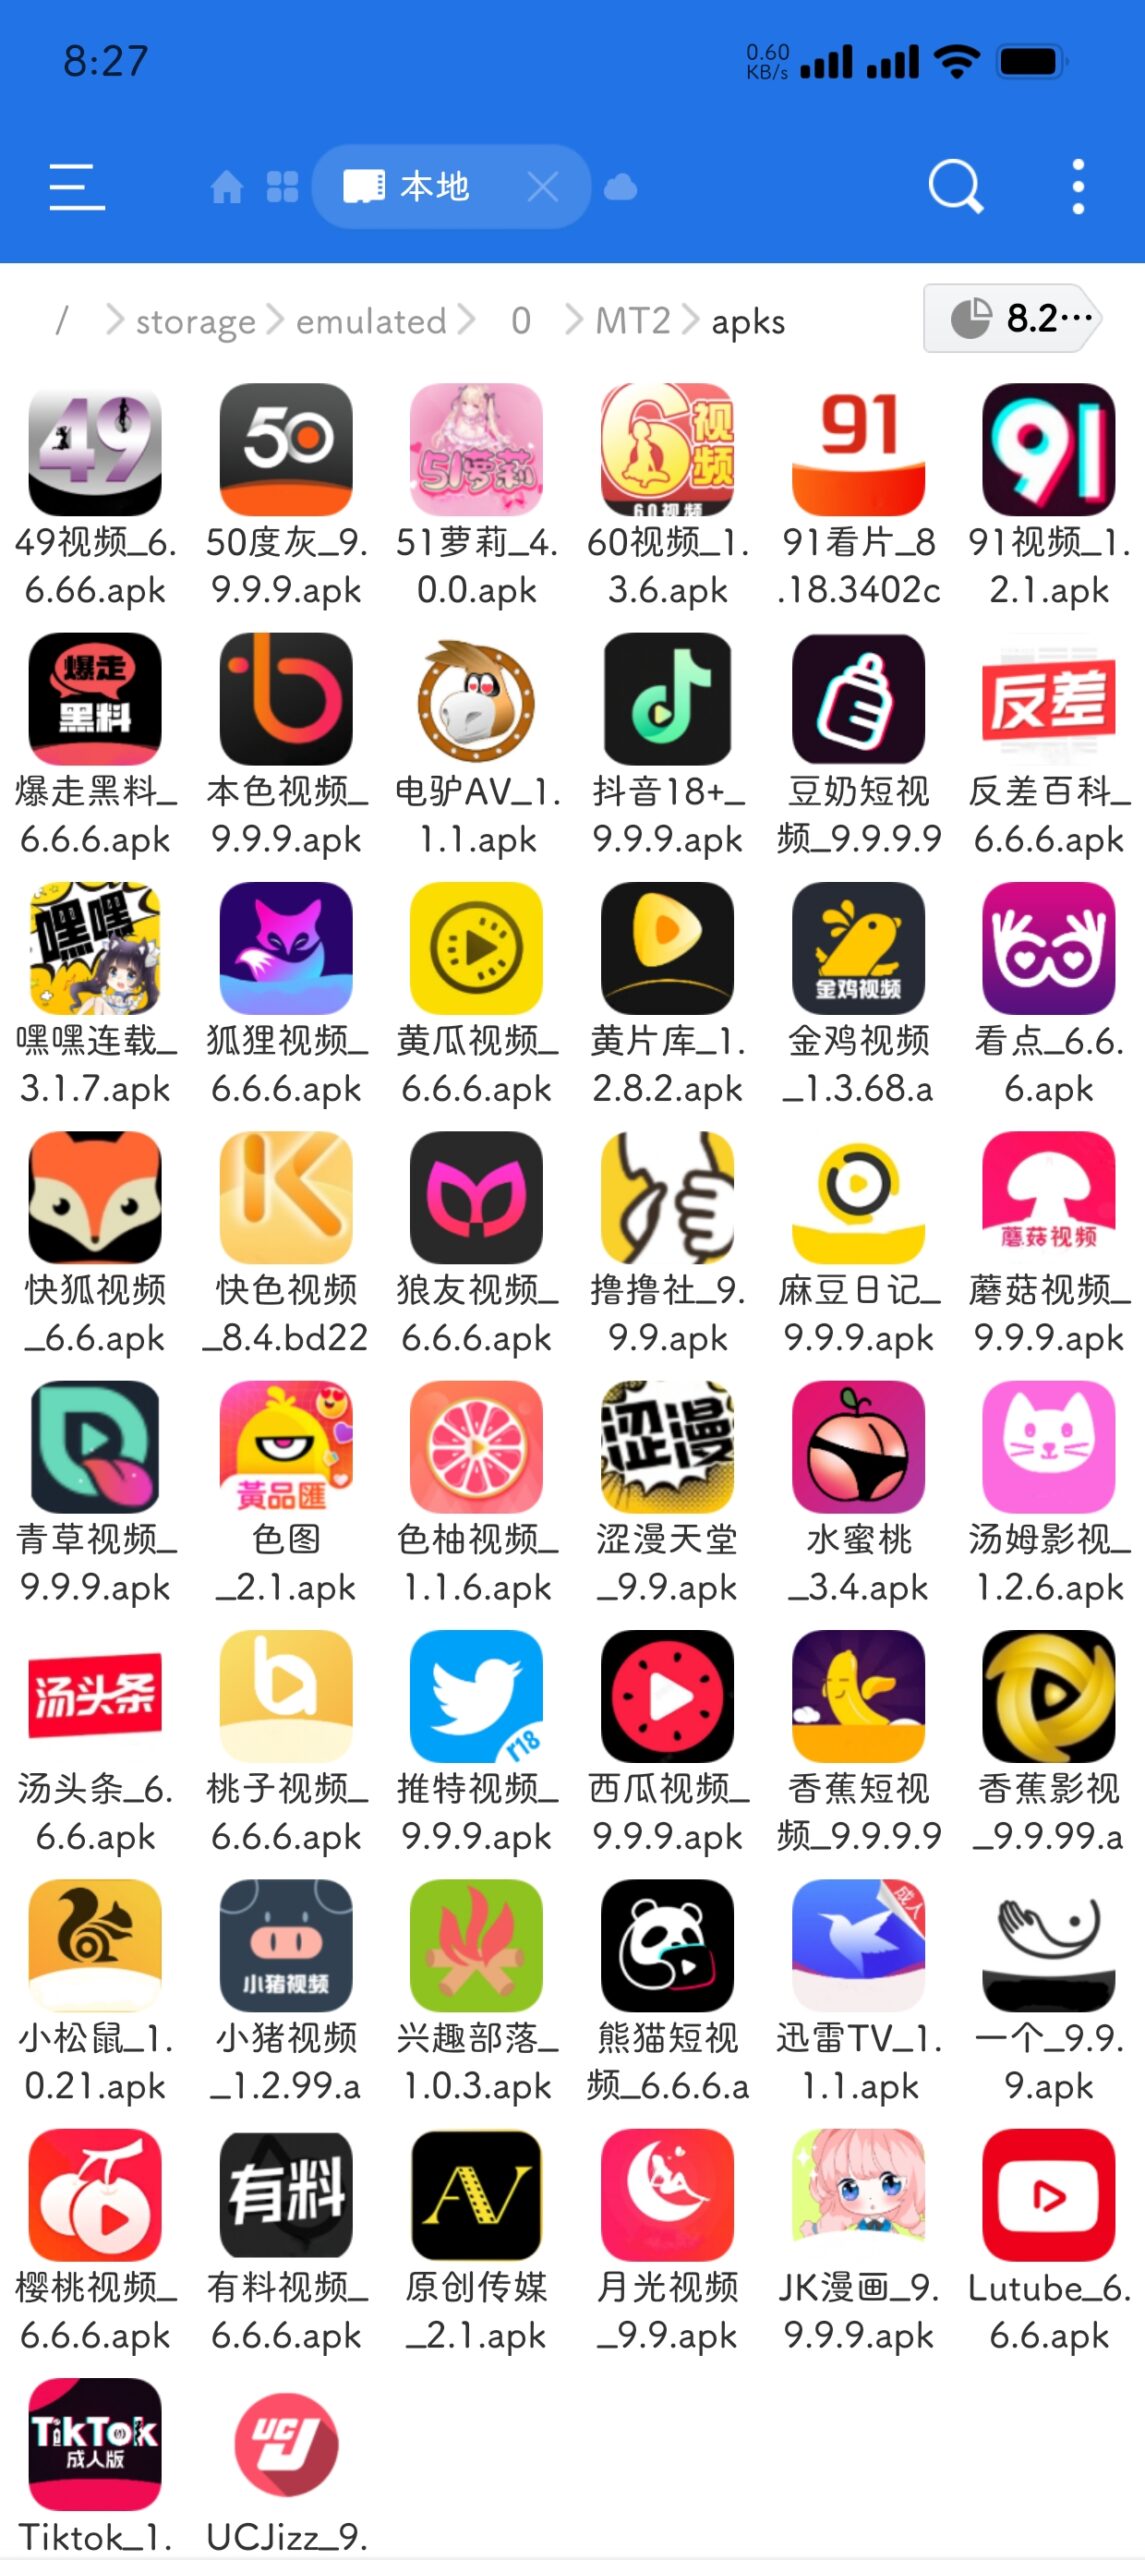 福利app50个打包-绅士乐园论坛-资源分享-叼毛社区-全网免费资源基地-碉堡了论坛